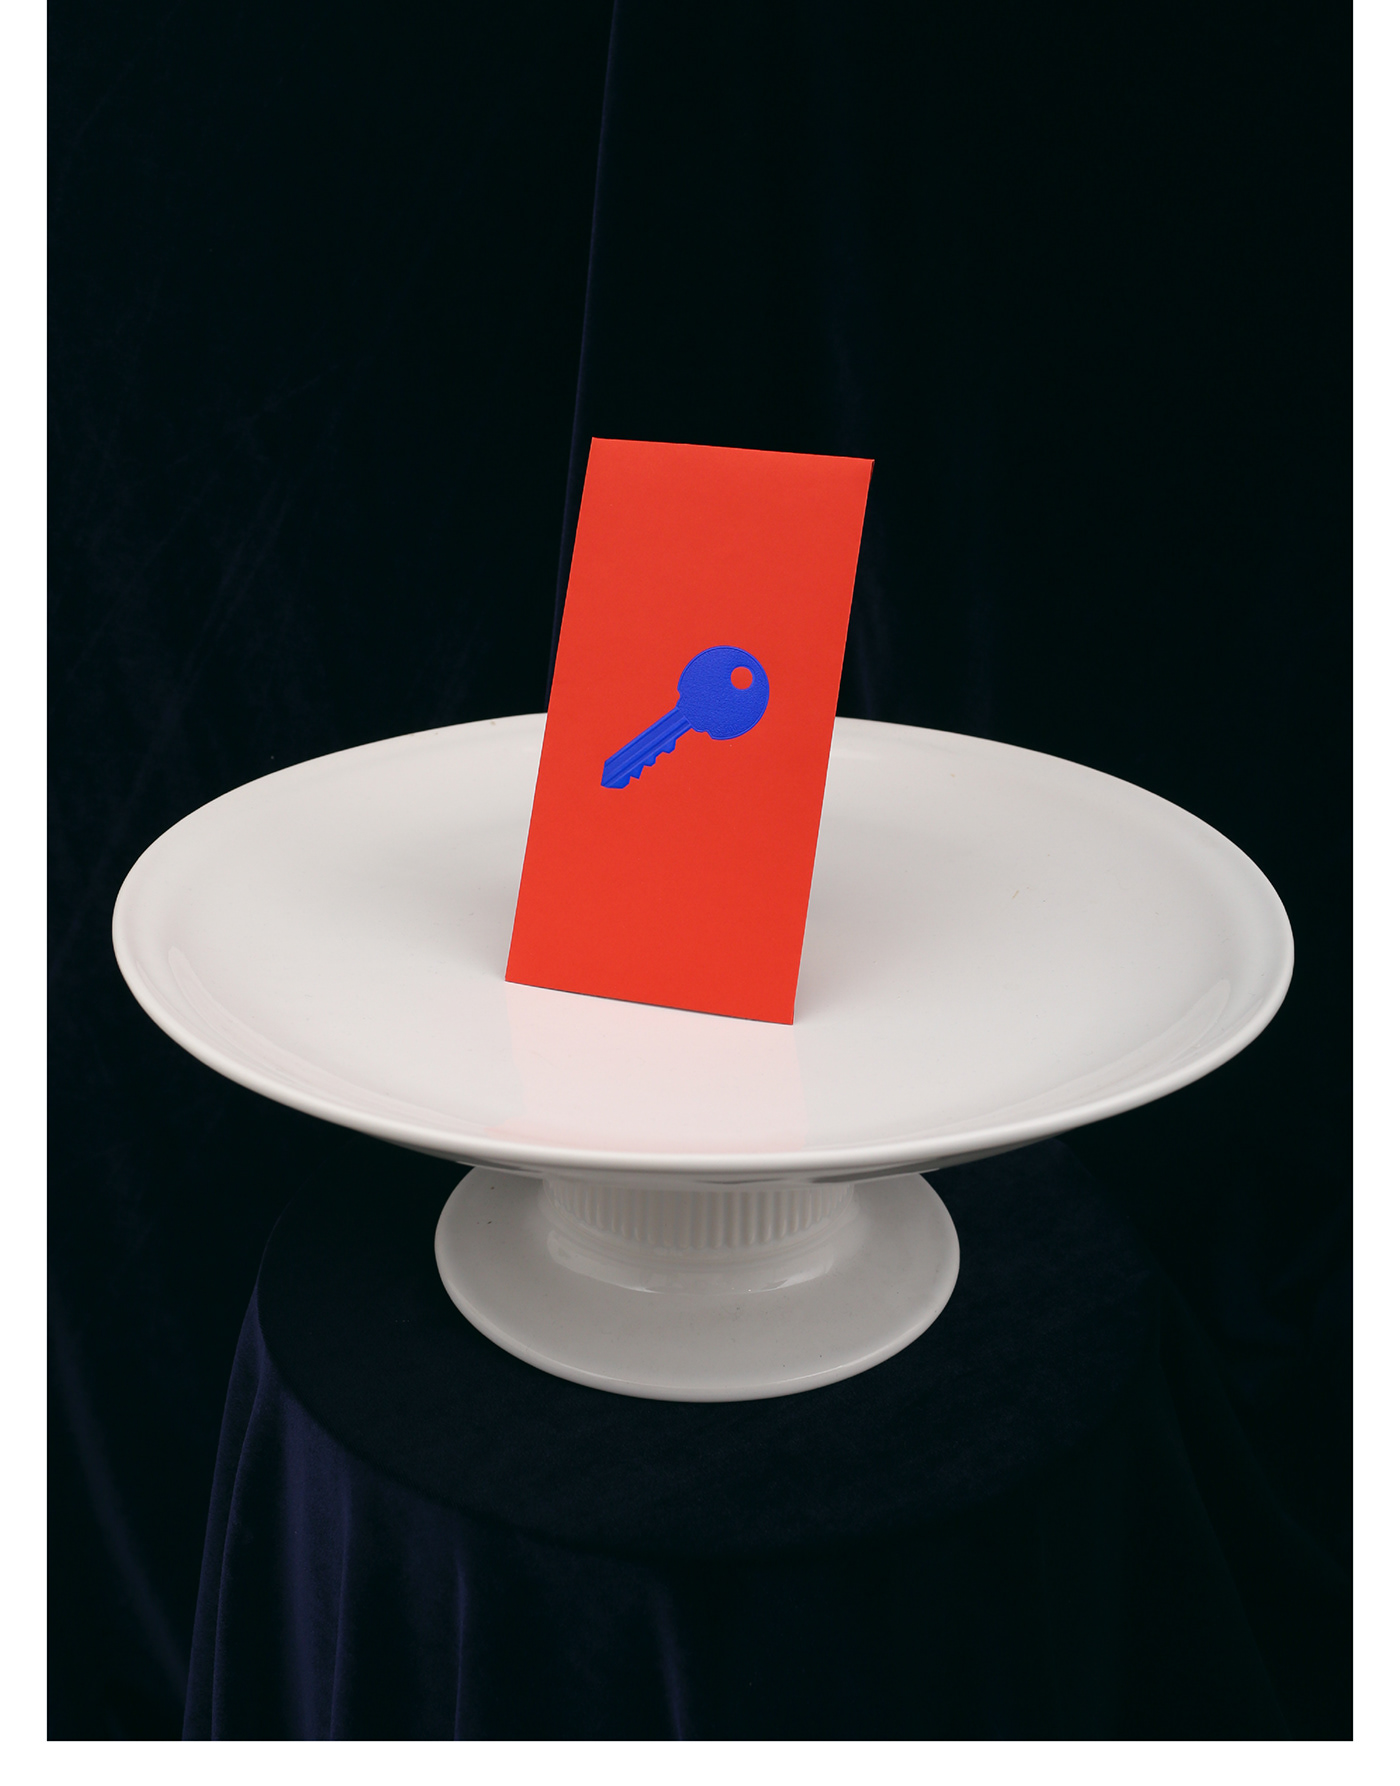 Red Pocket wedding bank card key coin game Red Envelope foil stamp stationary bespoke design